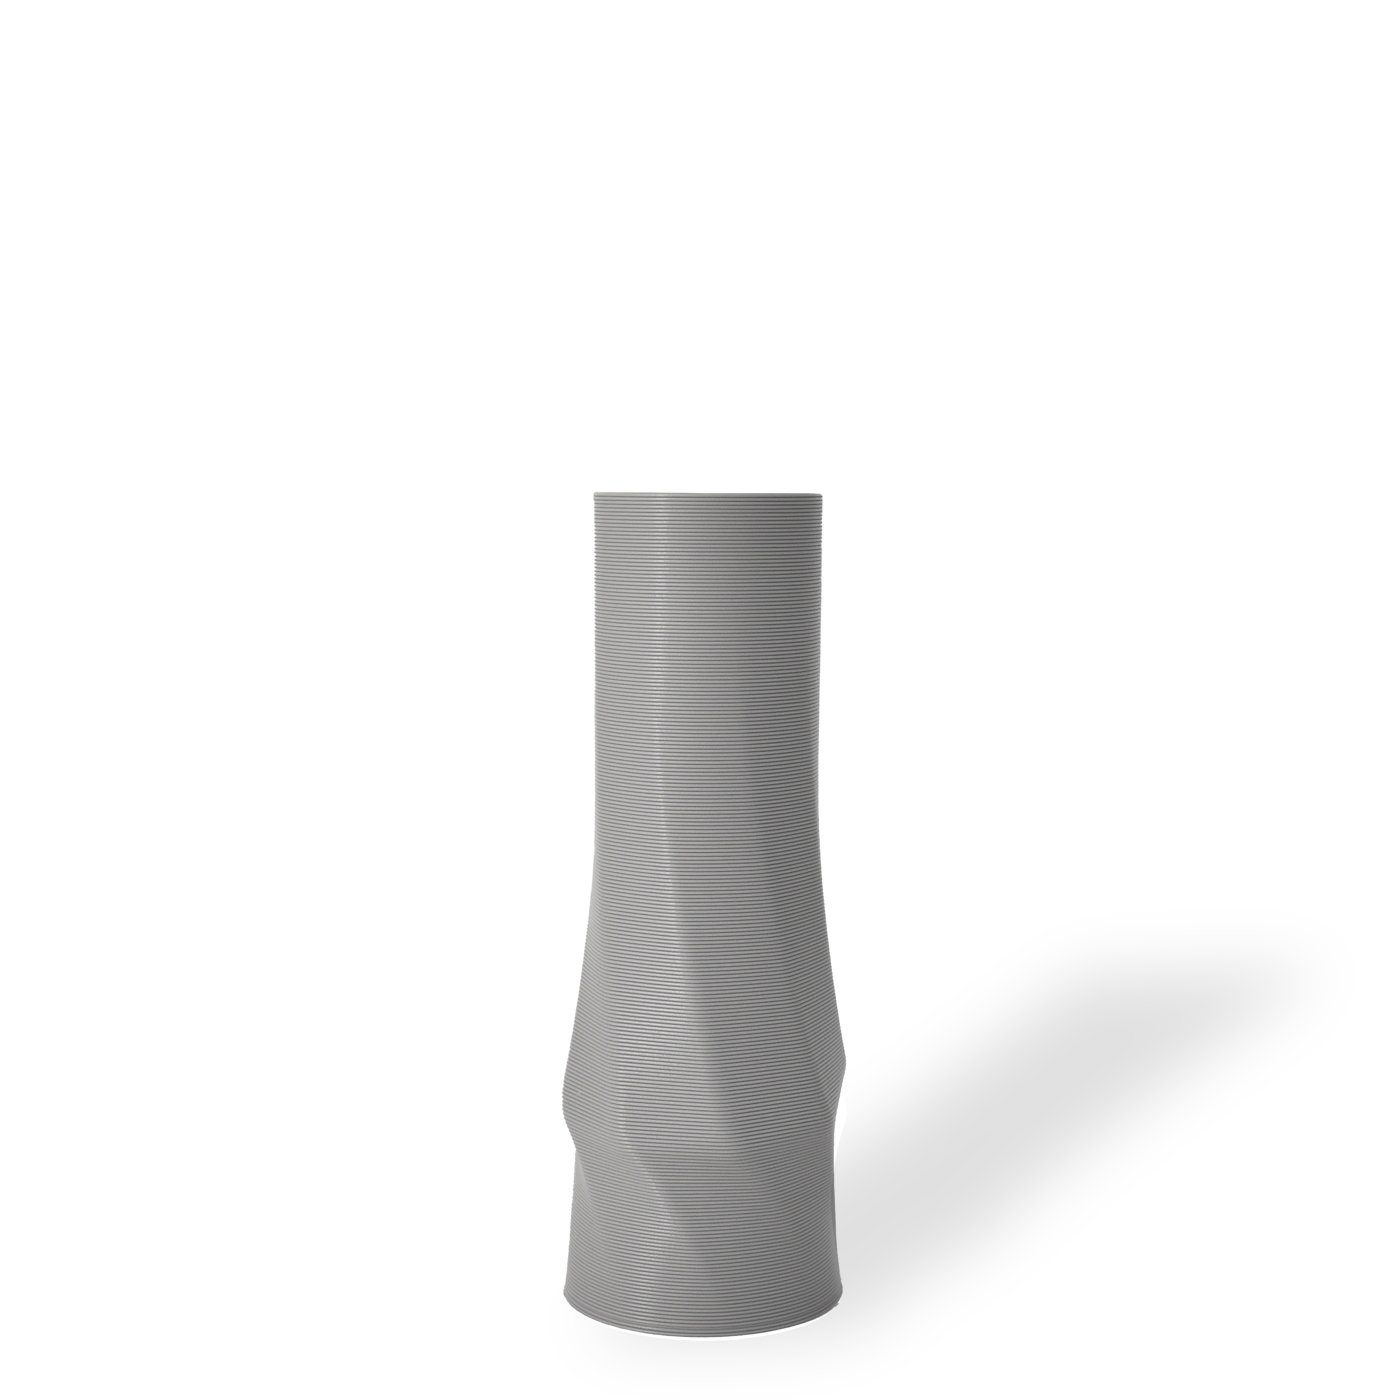 Shapes - Decorations Dekovase the vase - circle (basic), 3D Vasen, viele Farben, 100% 3D-Druck (Einzelmodell, 1 Vase), Wasserdicht; Leichte Struktur innerhalb des Materials (Rillung) Hellgrau